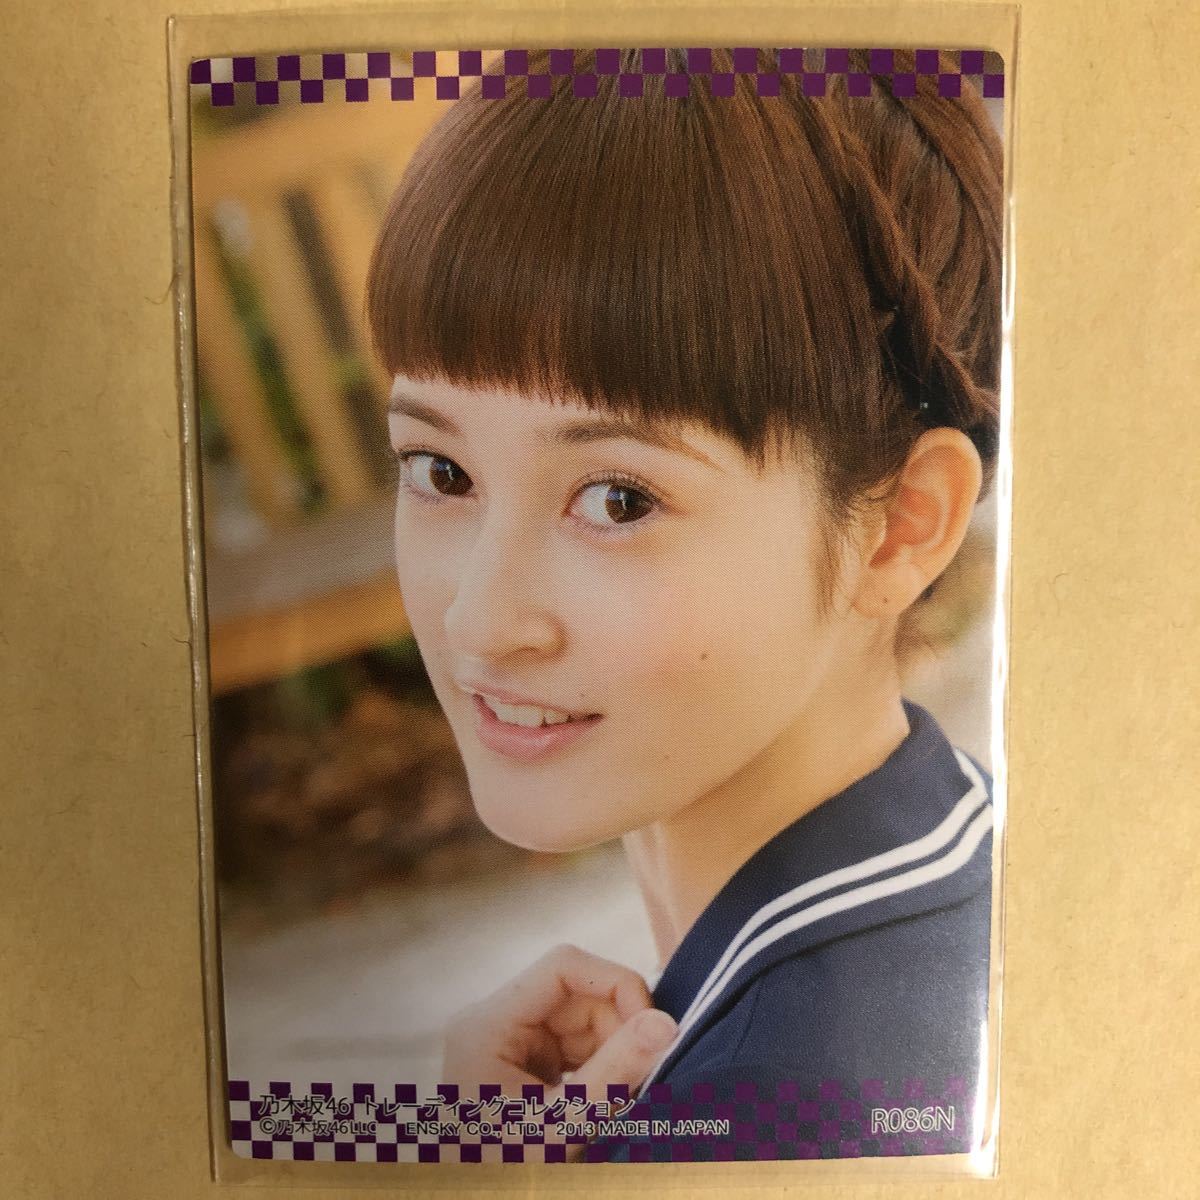 乃木坂46 宮澤成良 2013トレカ アイドル グラビア カード R086N タレント トレーディングカード_画像2